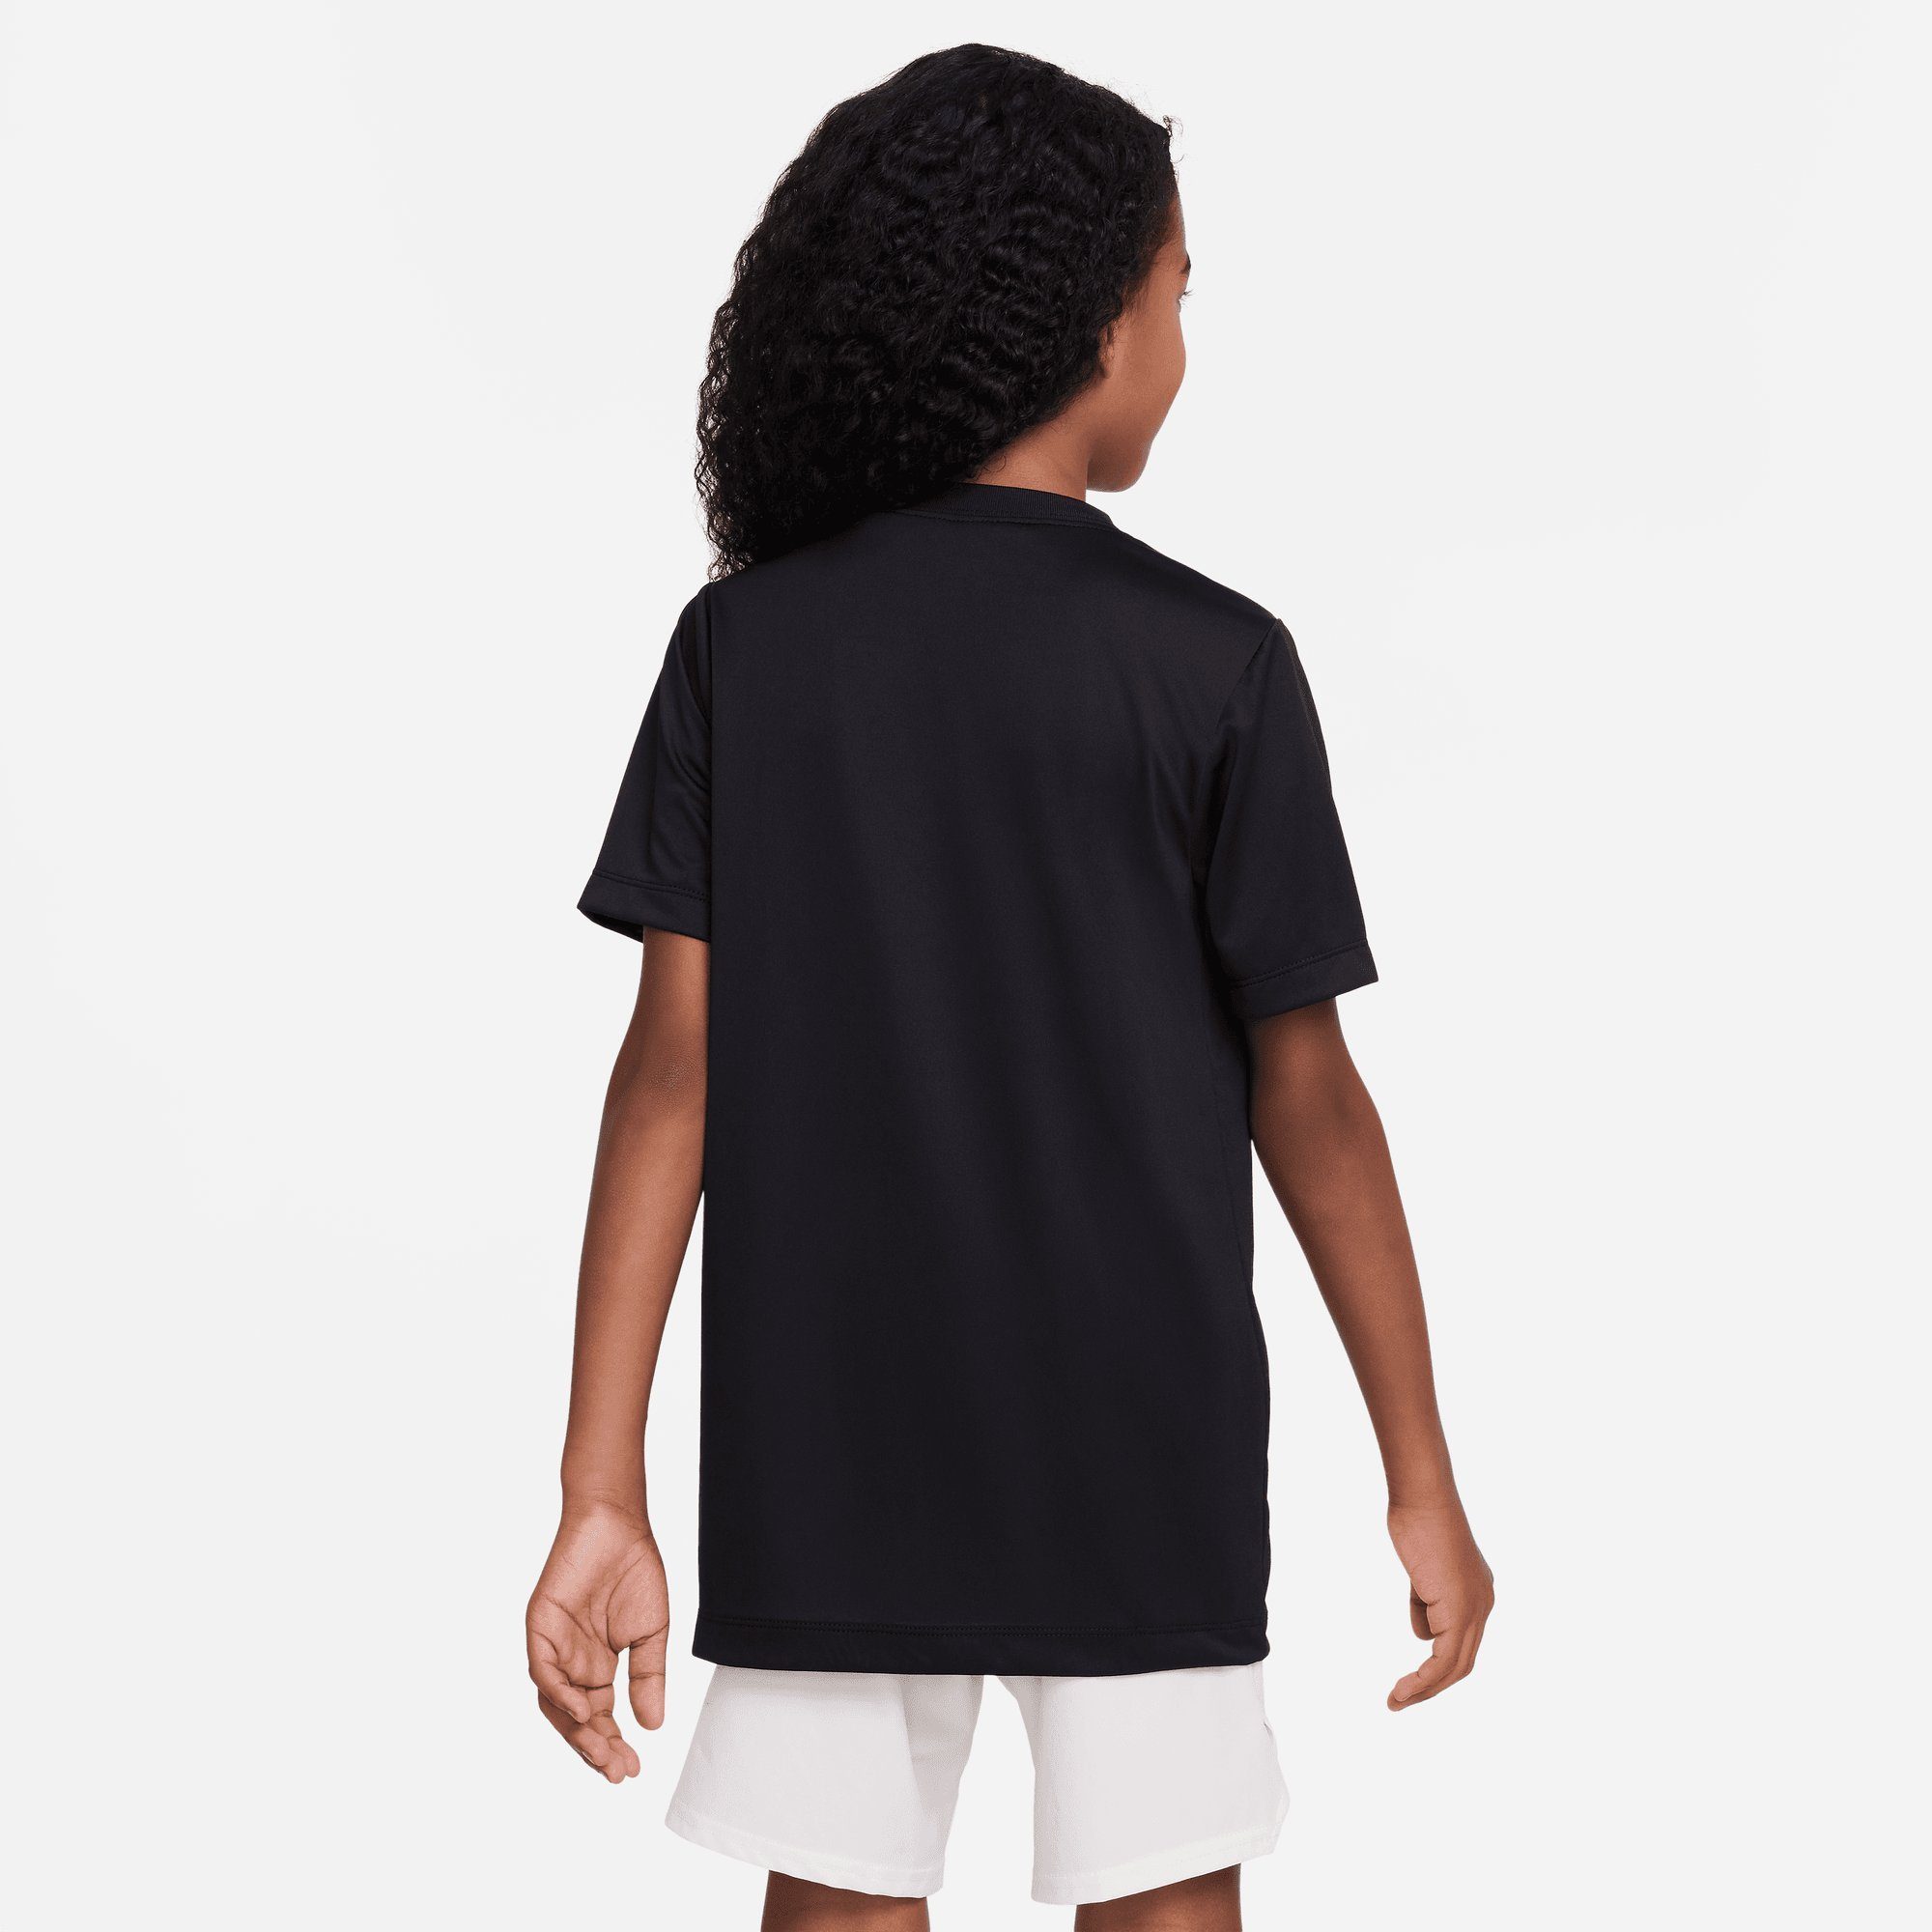 Nike BLACK BIG DRI-FIT T-Shirt (BOYS) TRAINING T-SHIRT Sportswear KIDS'